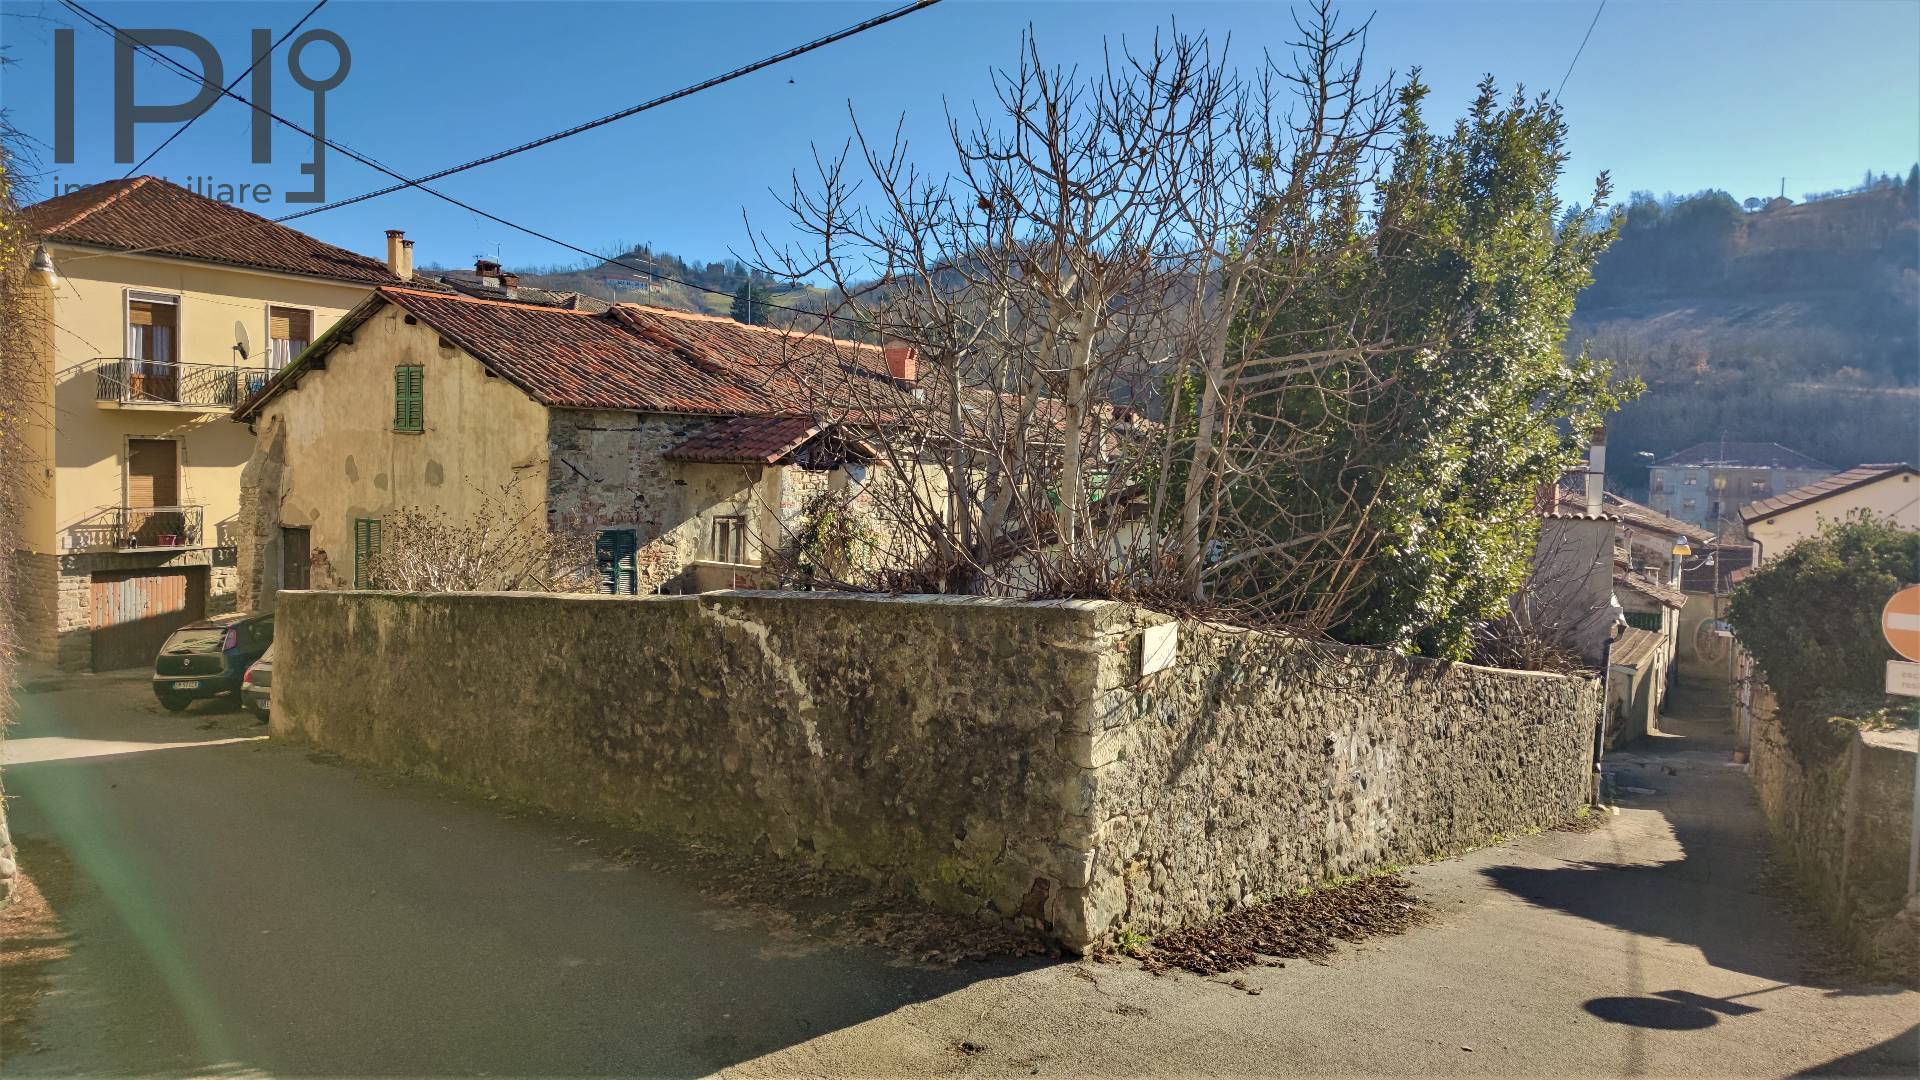 Rustico / Casale in vendita a Spigno Monferrato, 10 locali, prezzo € 30.000 | PortaleAgenzieImmobiliari.it